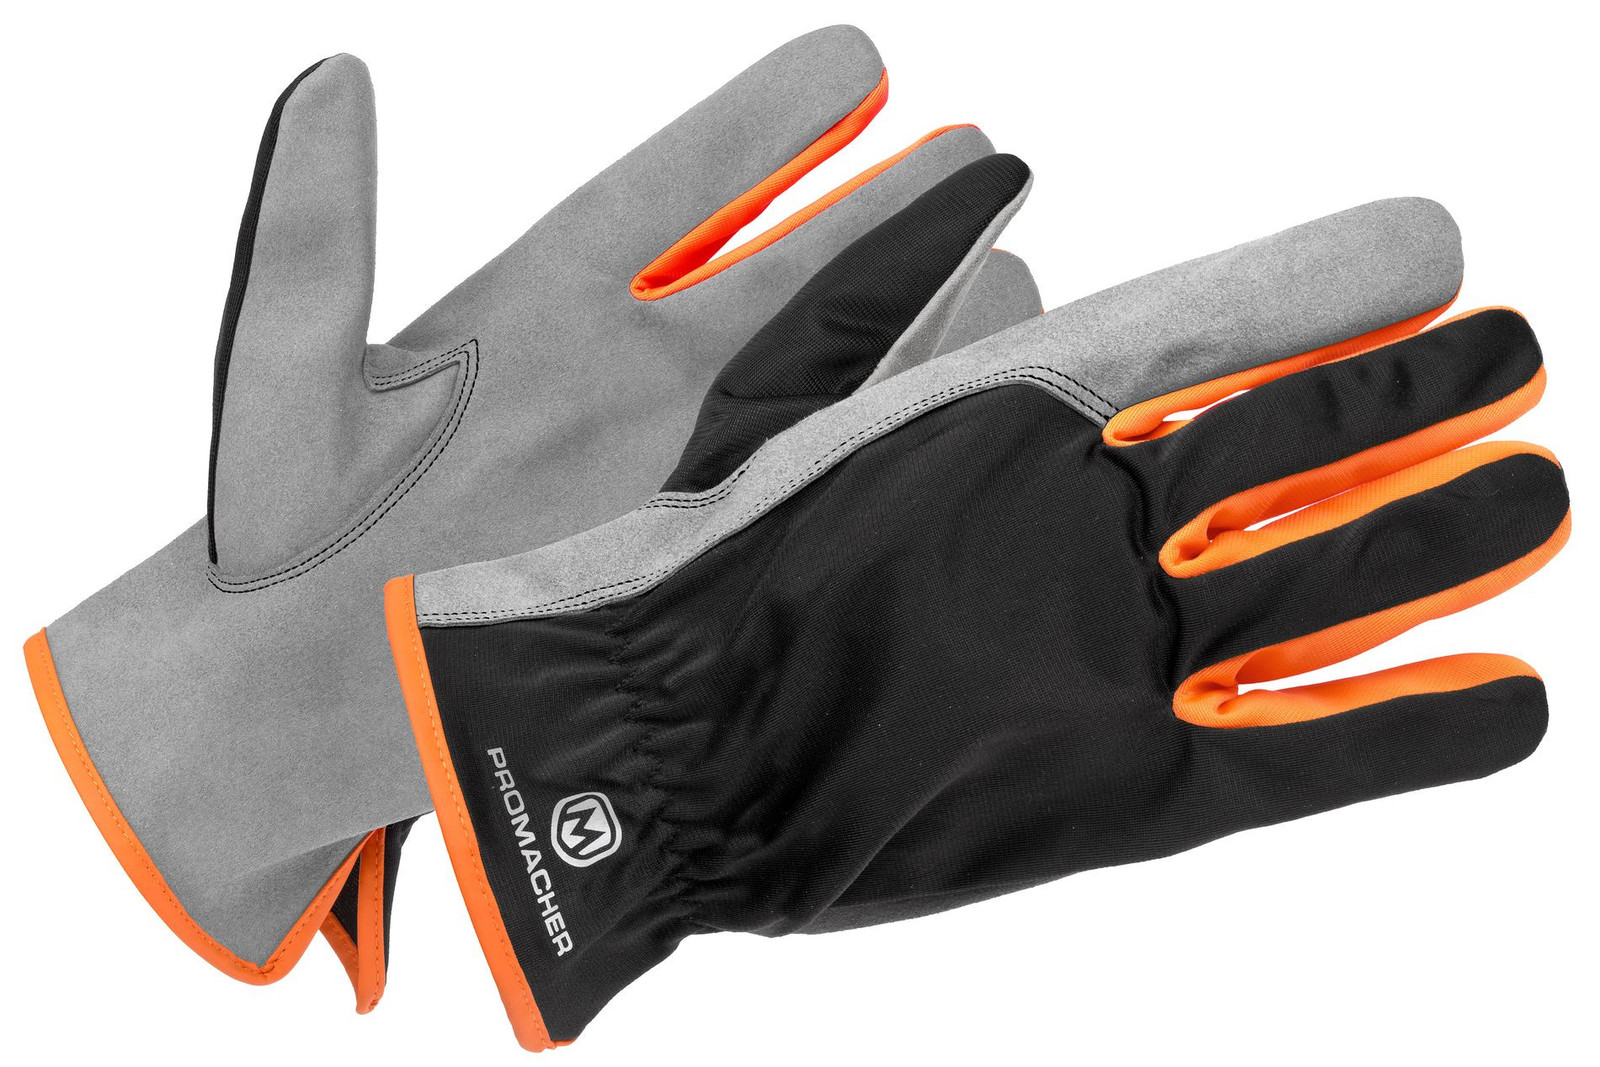 Pracovné rukavice Promacher Carpos kombinované - veľkosť: 8/M, farba: svetlo sivá/ oranžová